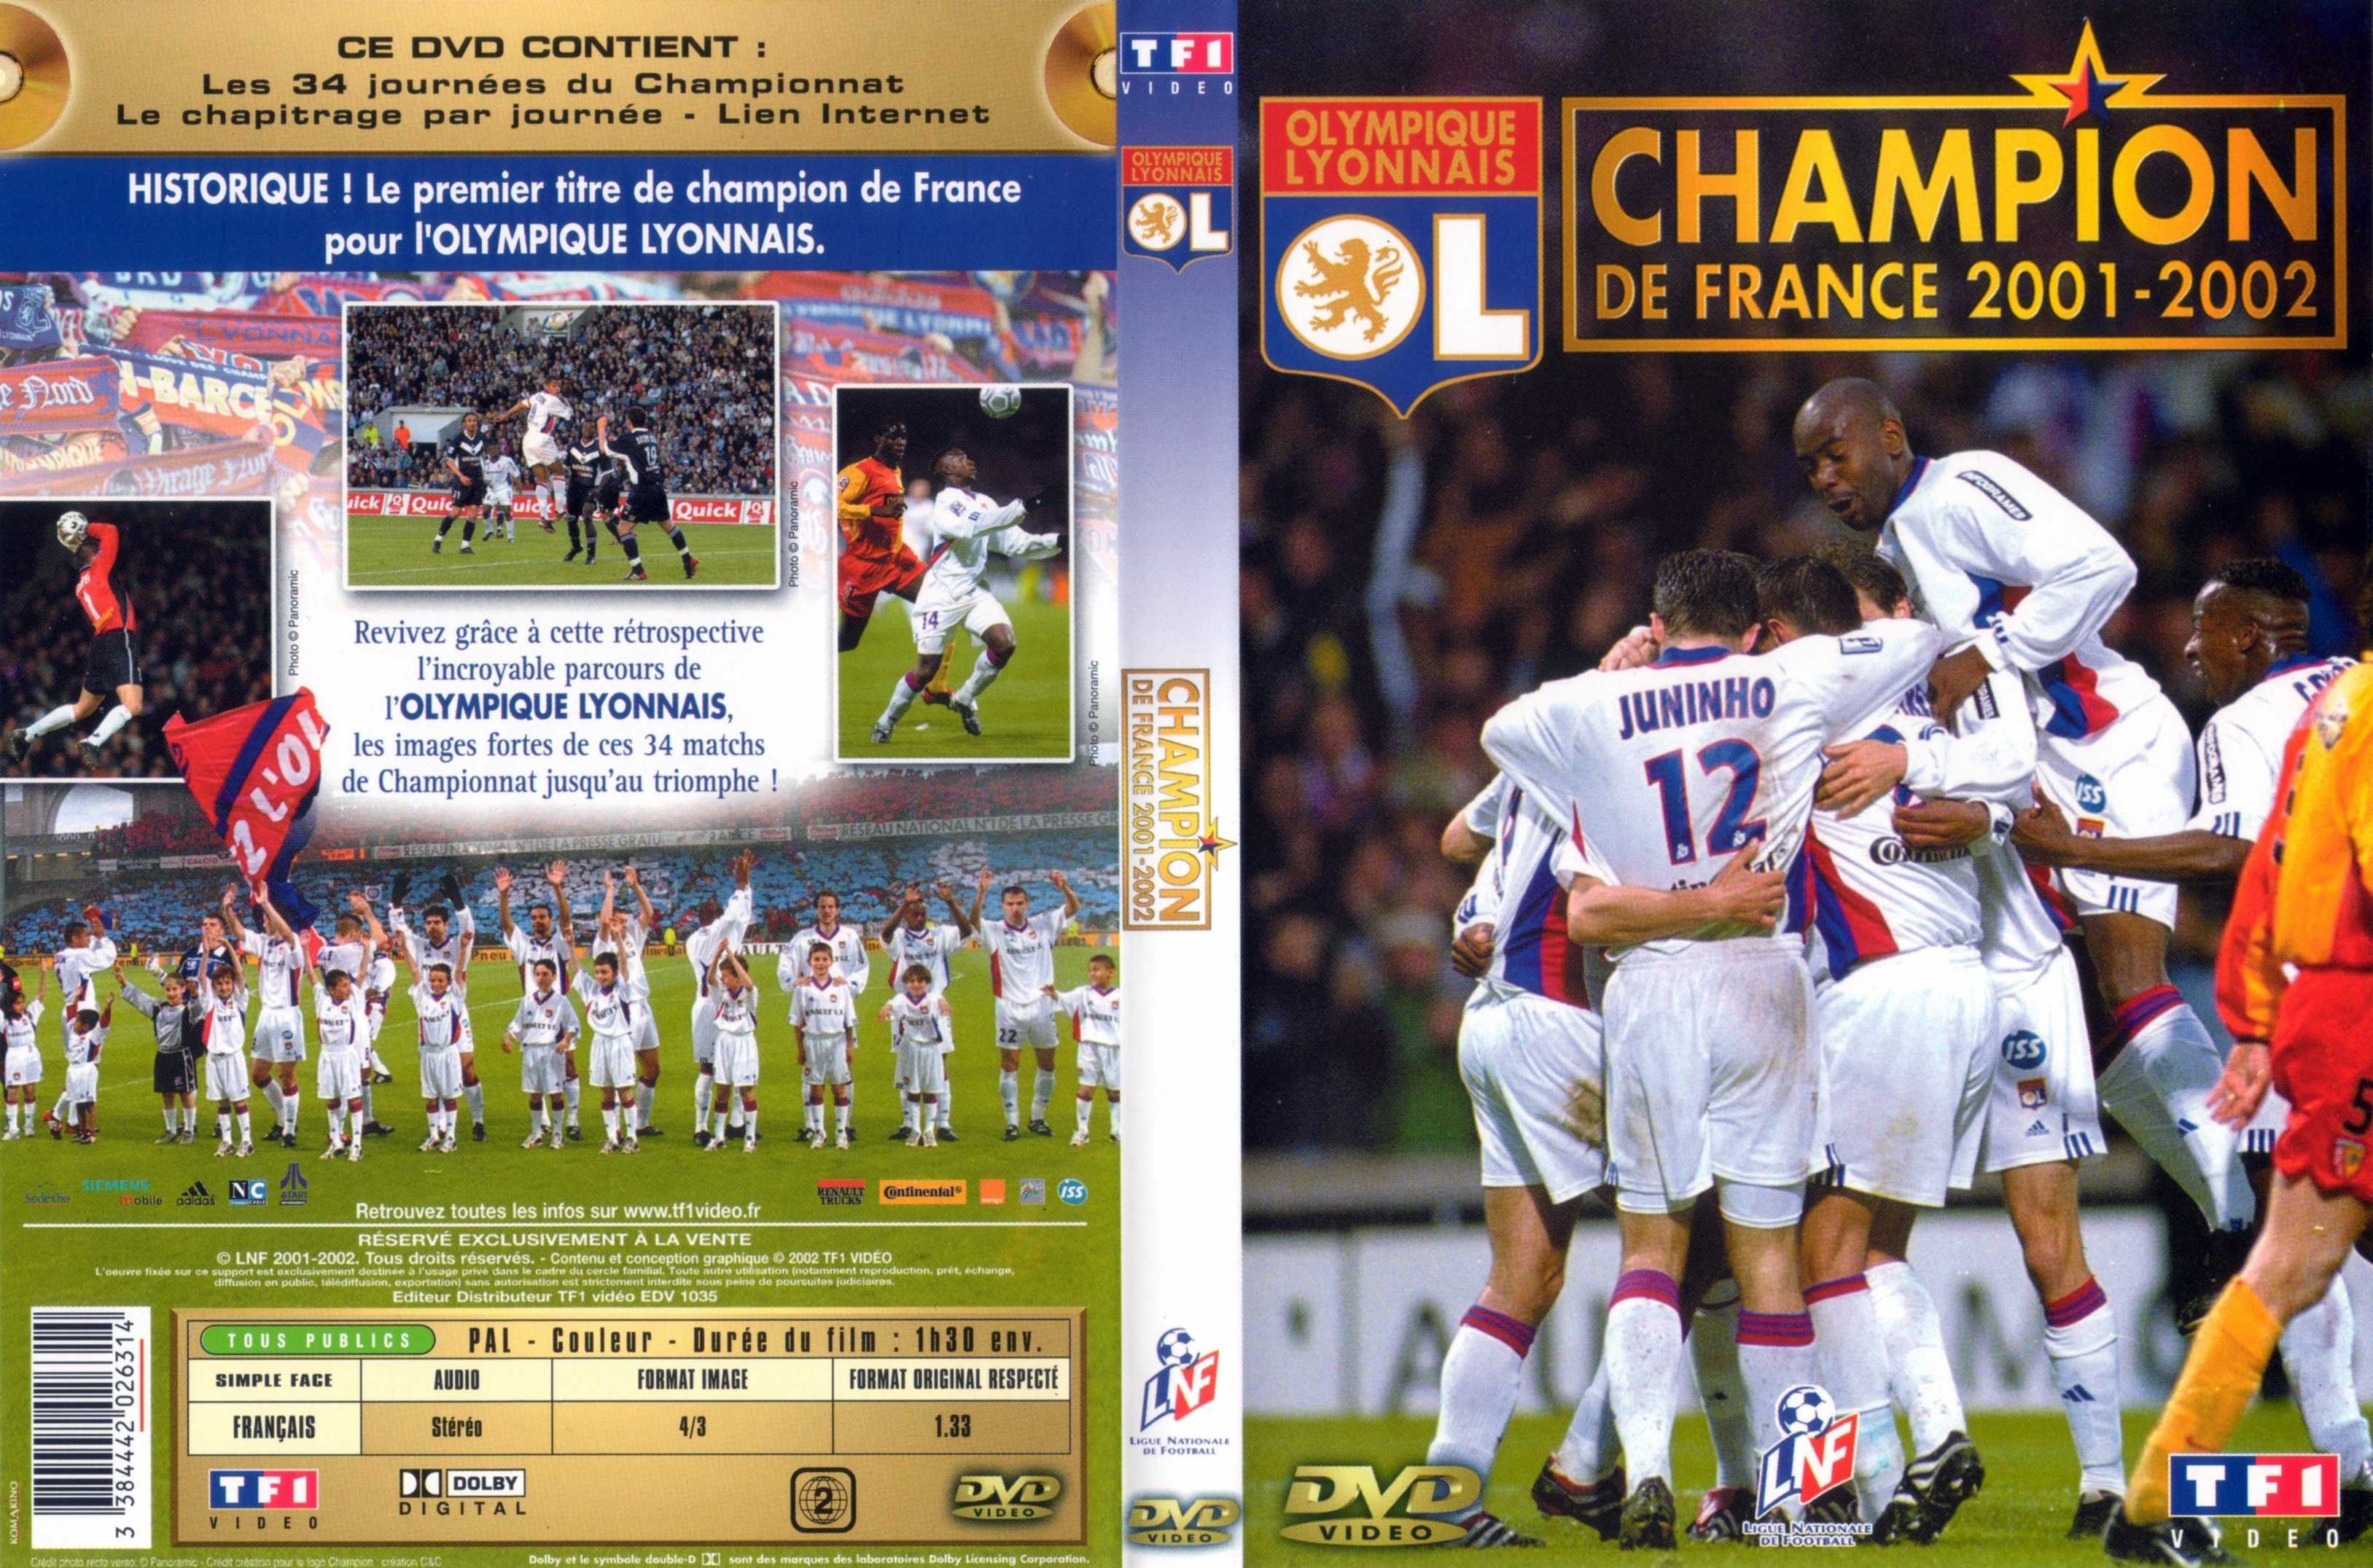 Jaquette DVD Olympique Lyonnais champion de france 2001-2002